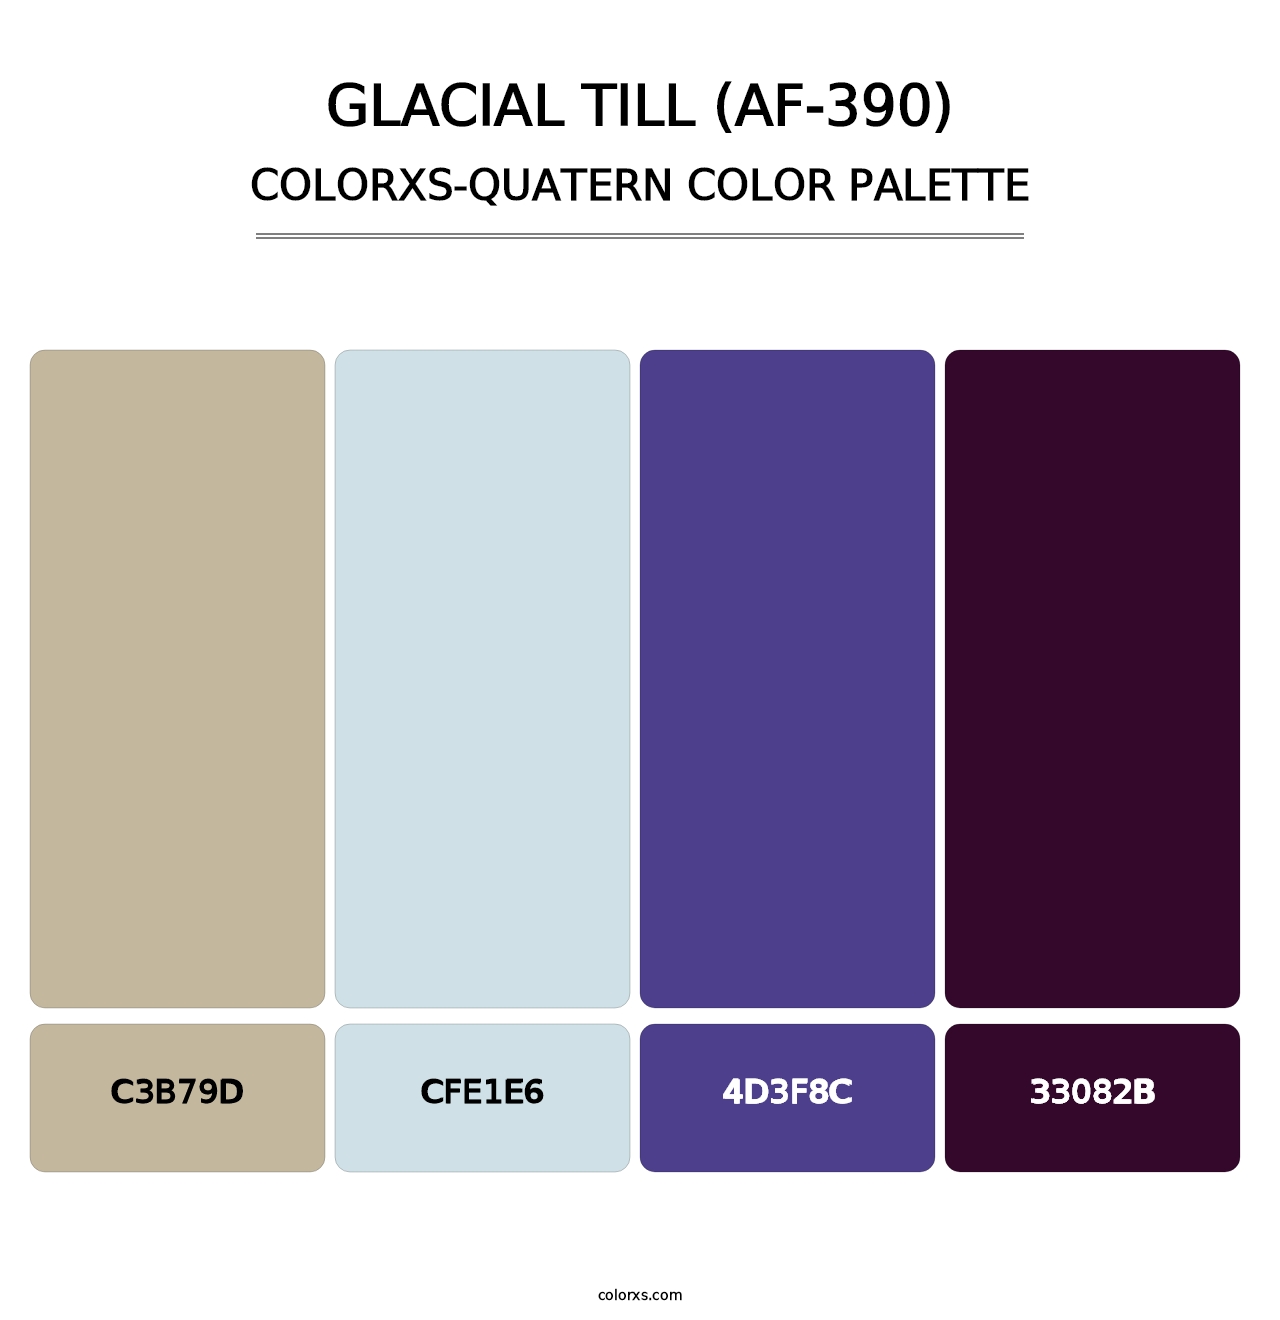 Glacial Till (AF-390) - Colorxs Quatern Palette